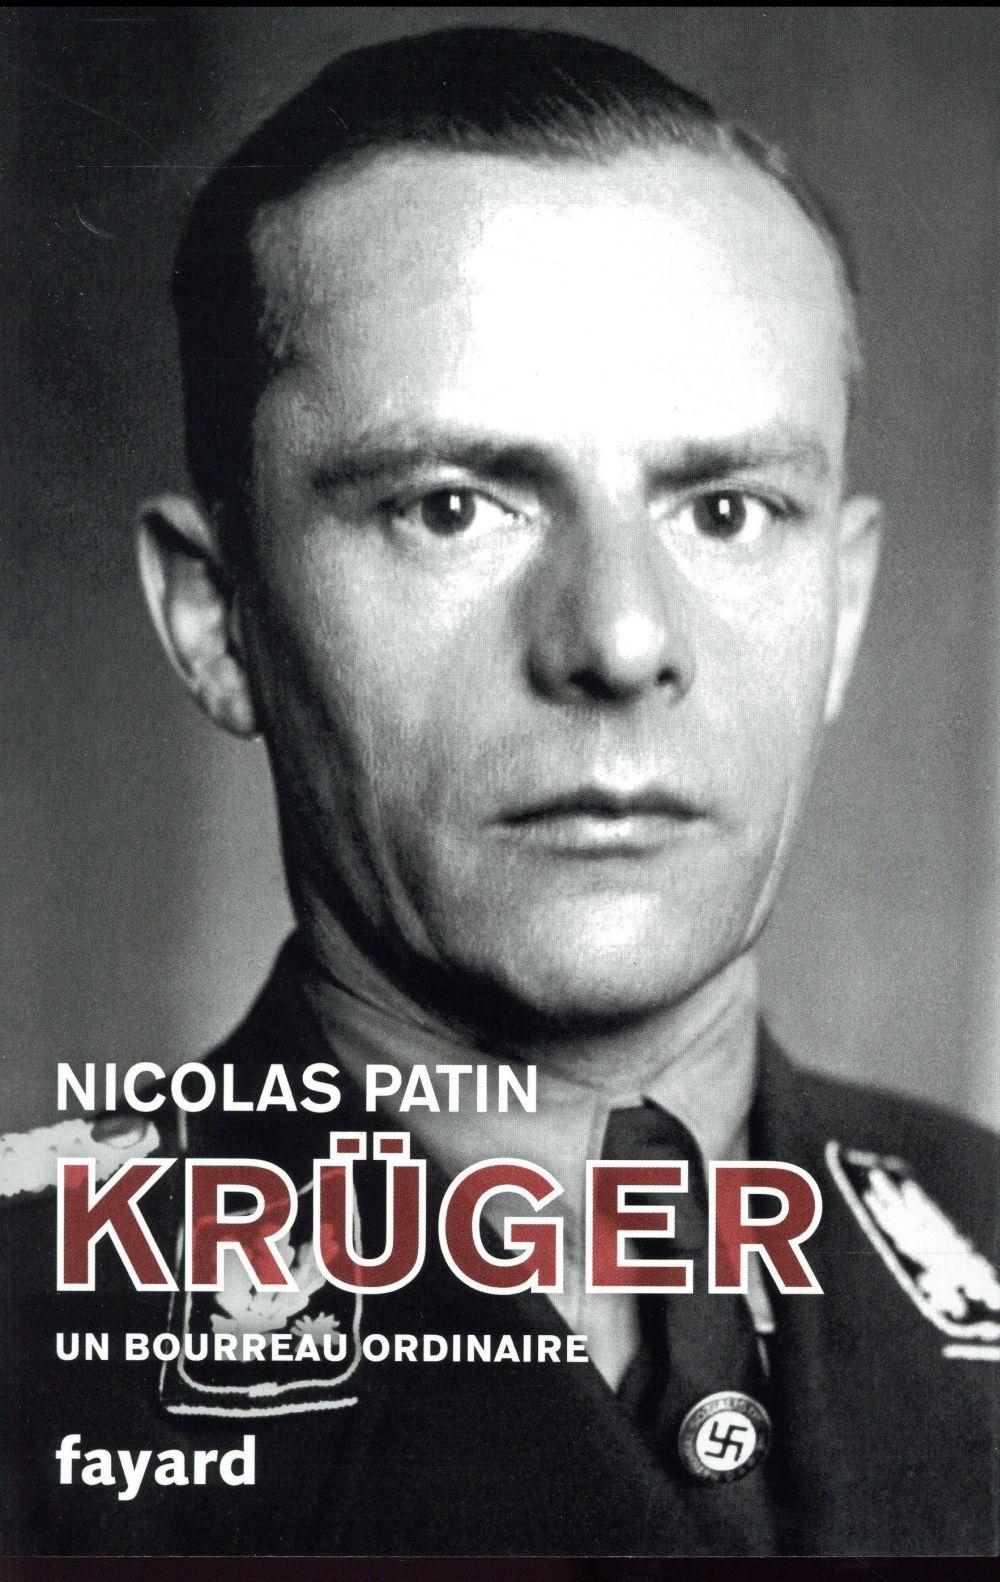 Krüger, un bourreau ordinaire - Patin, Nicolas